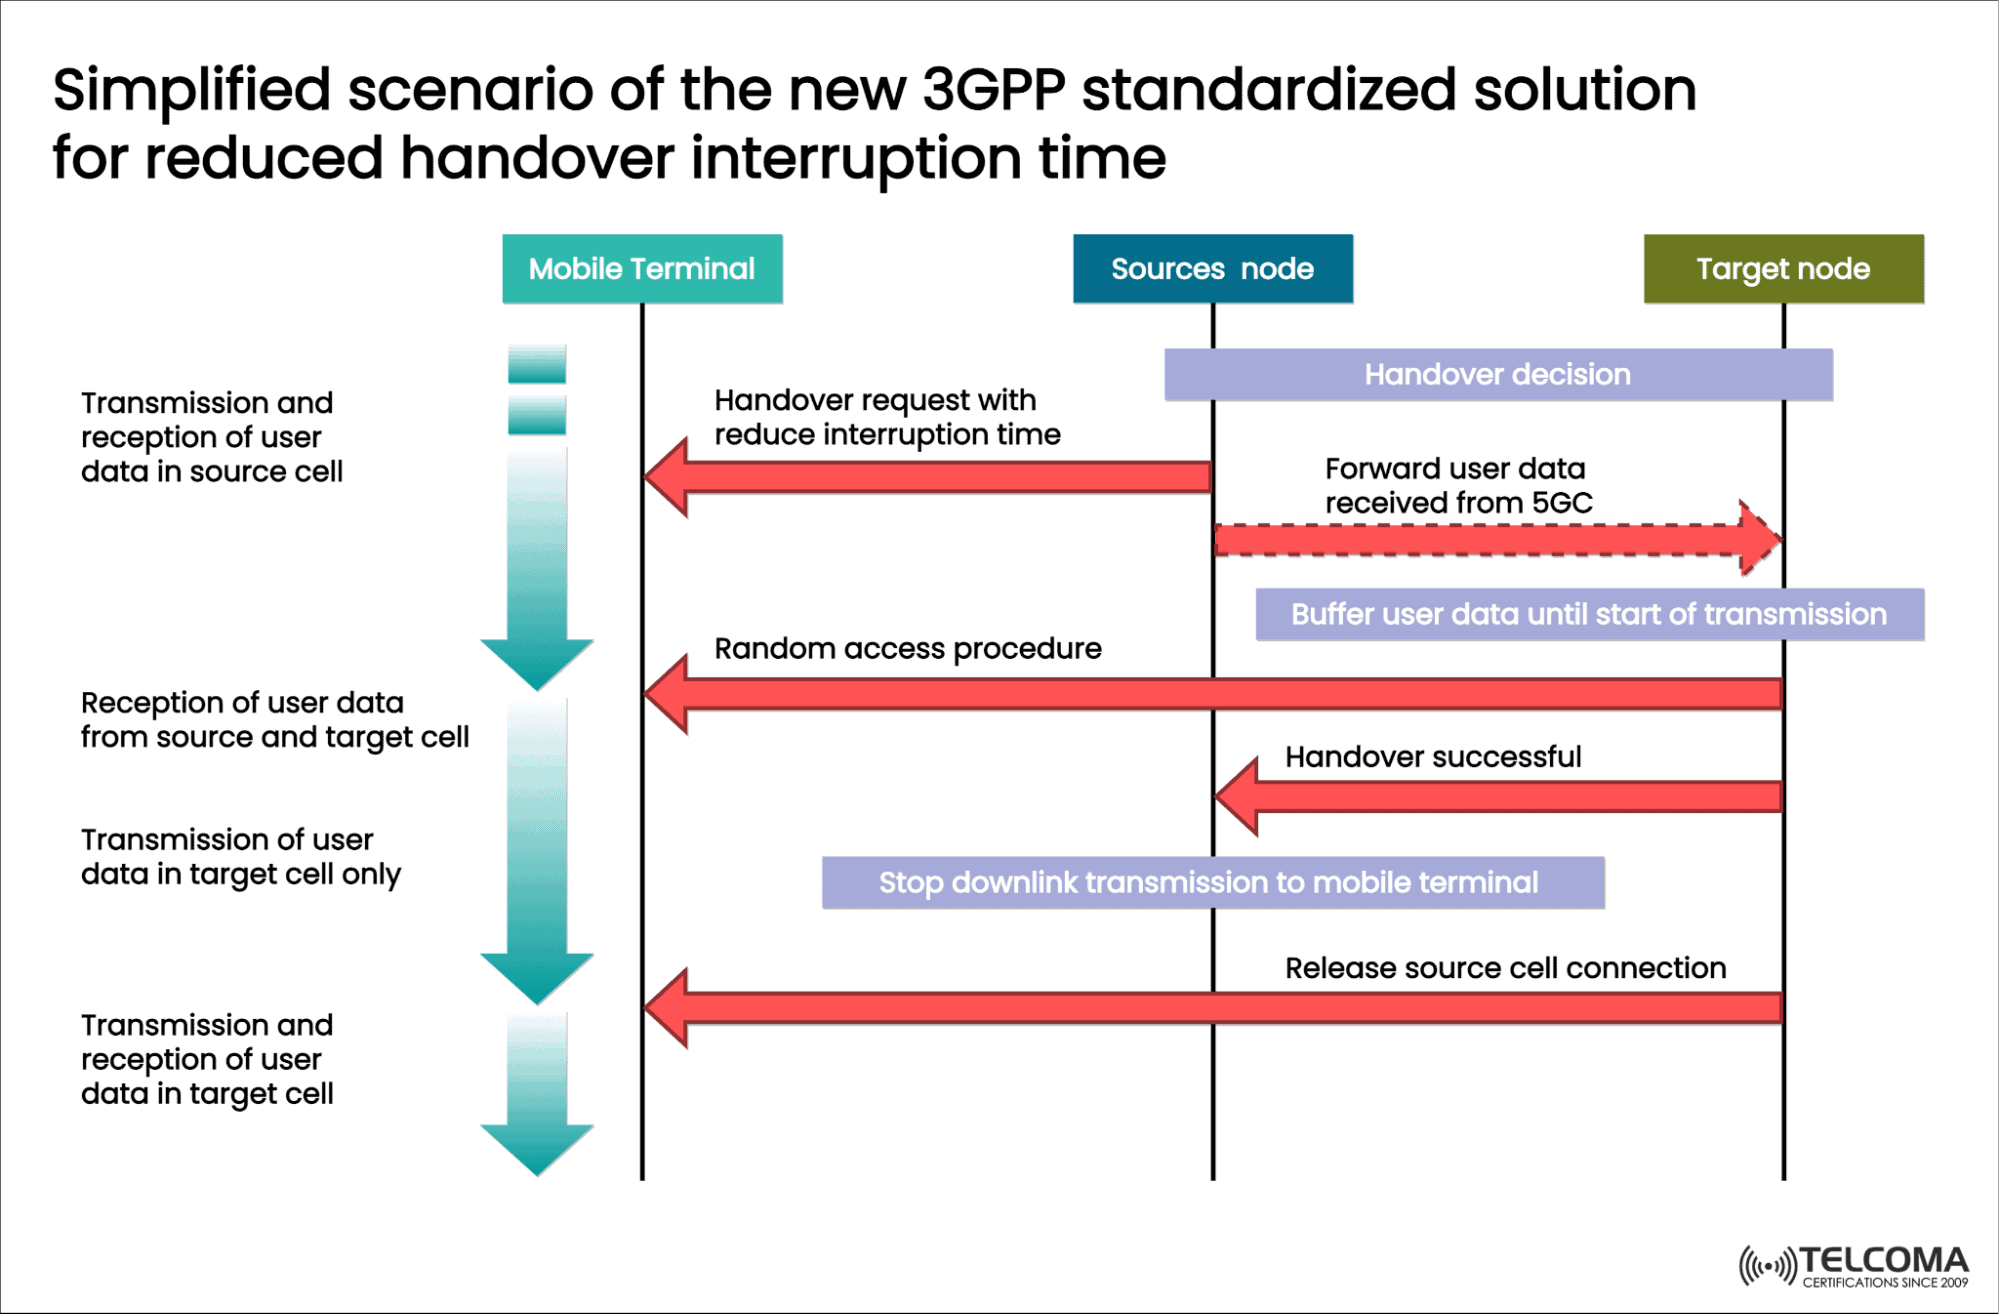 3gpp standard for reduced handover interruption time